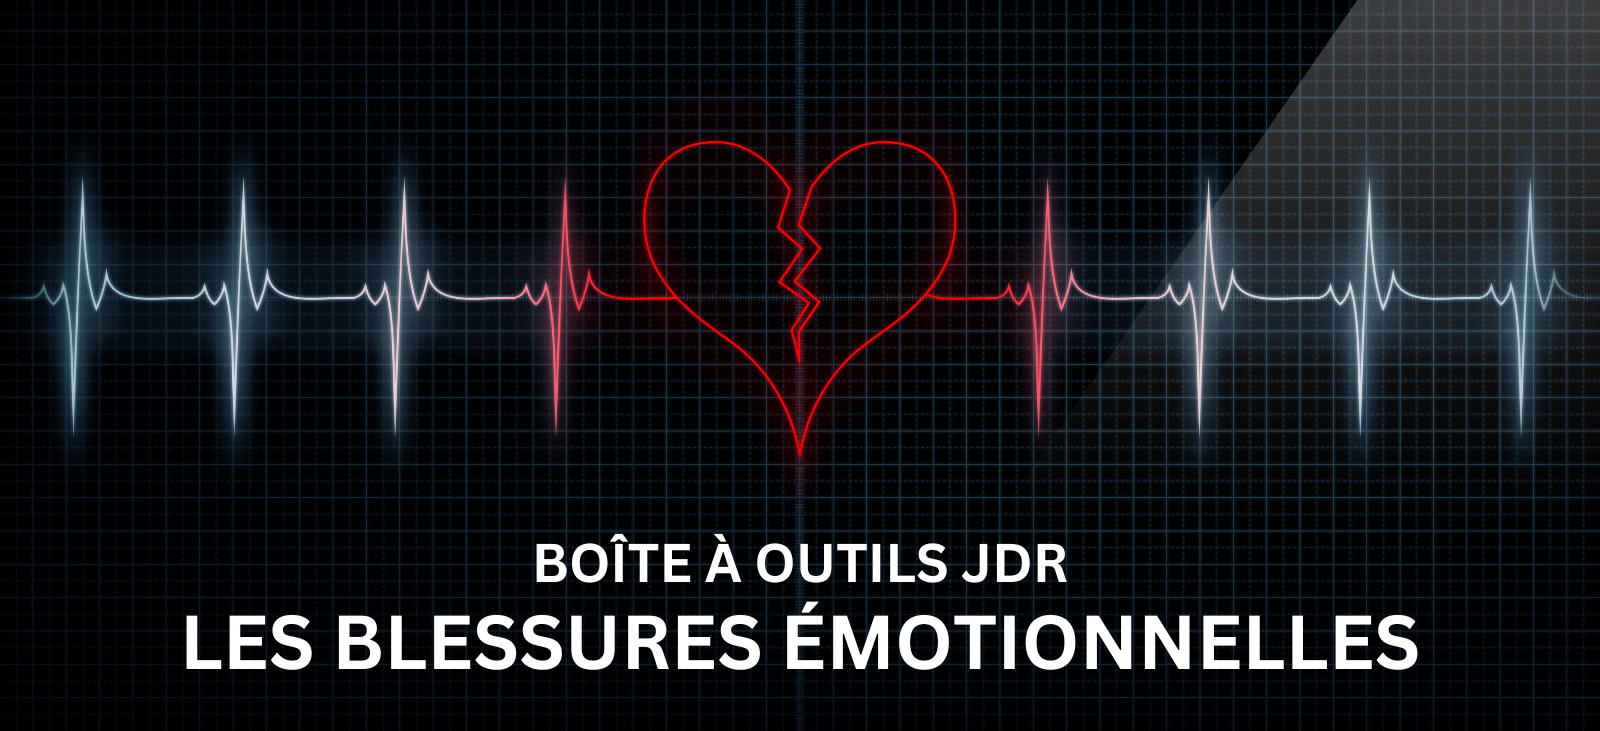 Boîte à outils JDR: les blessures émotionnelles